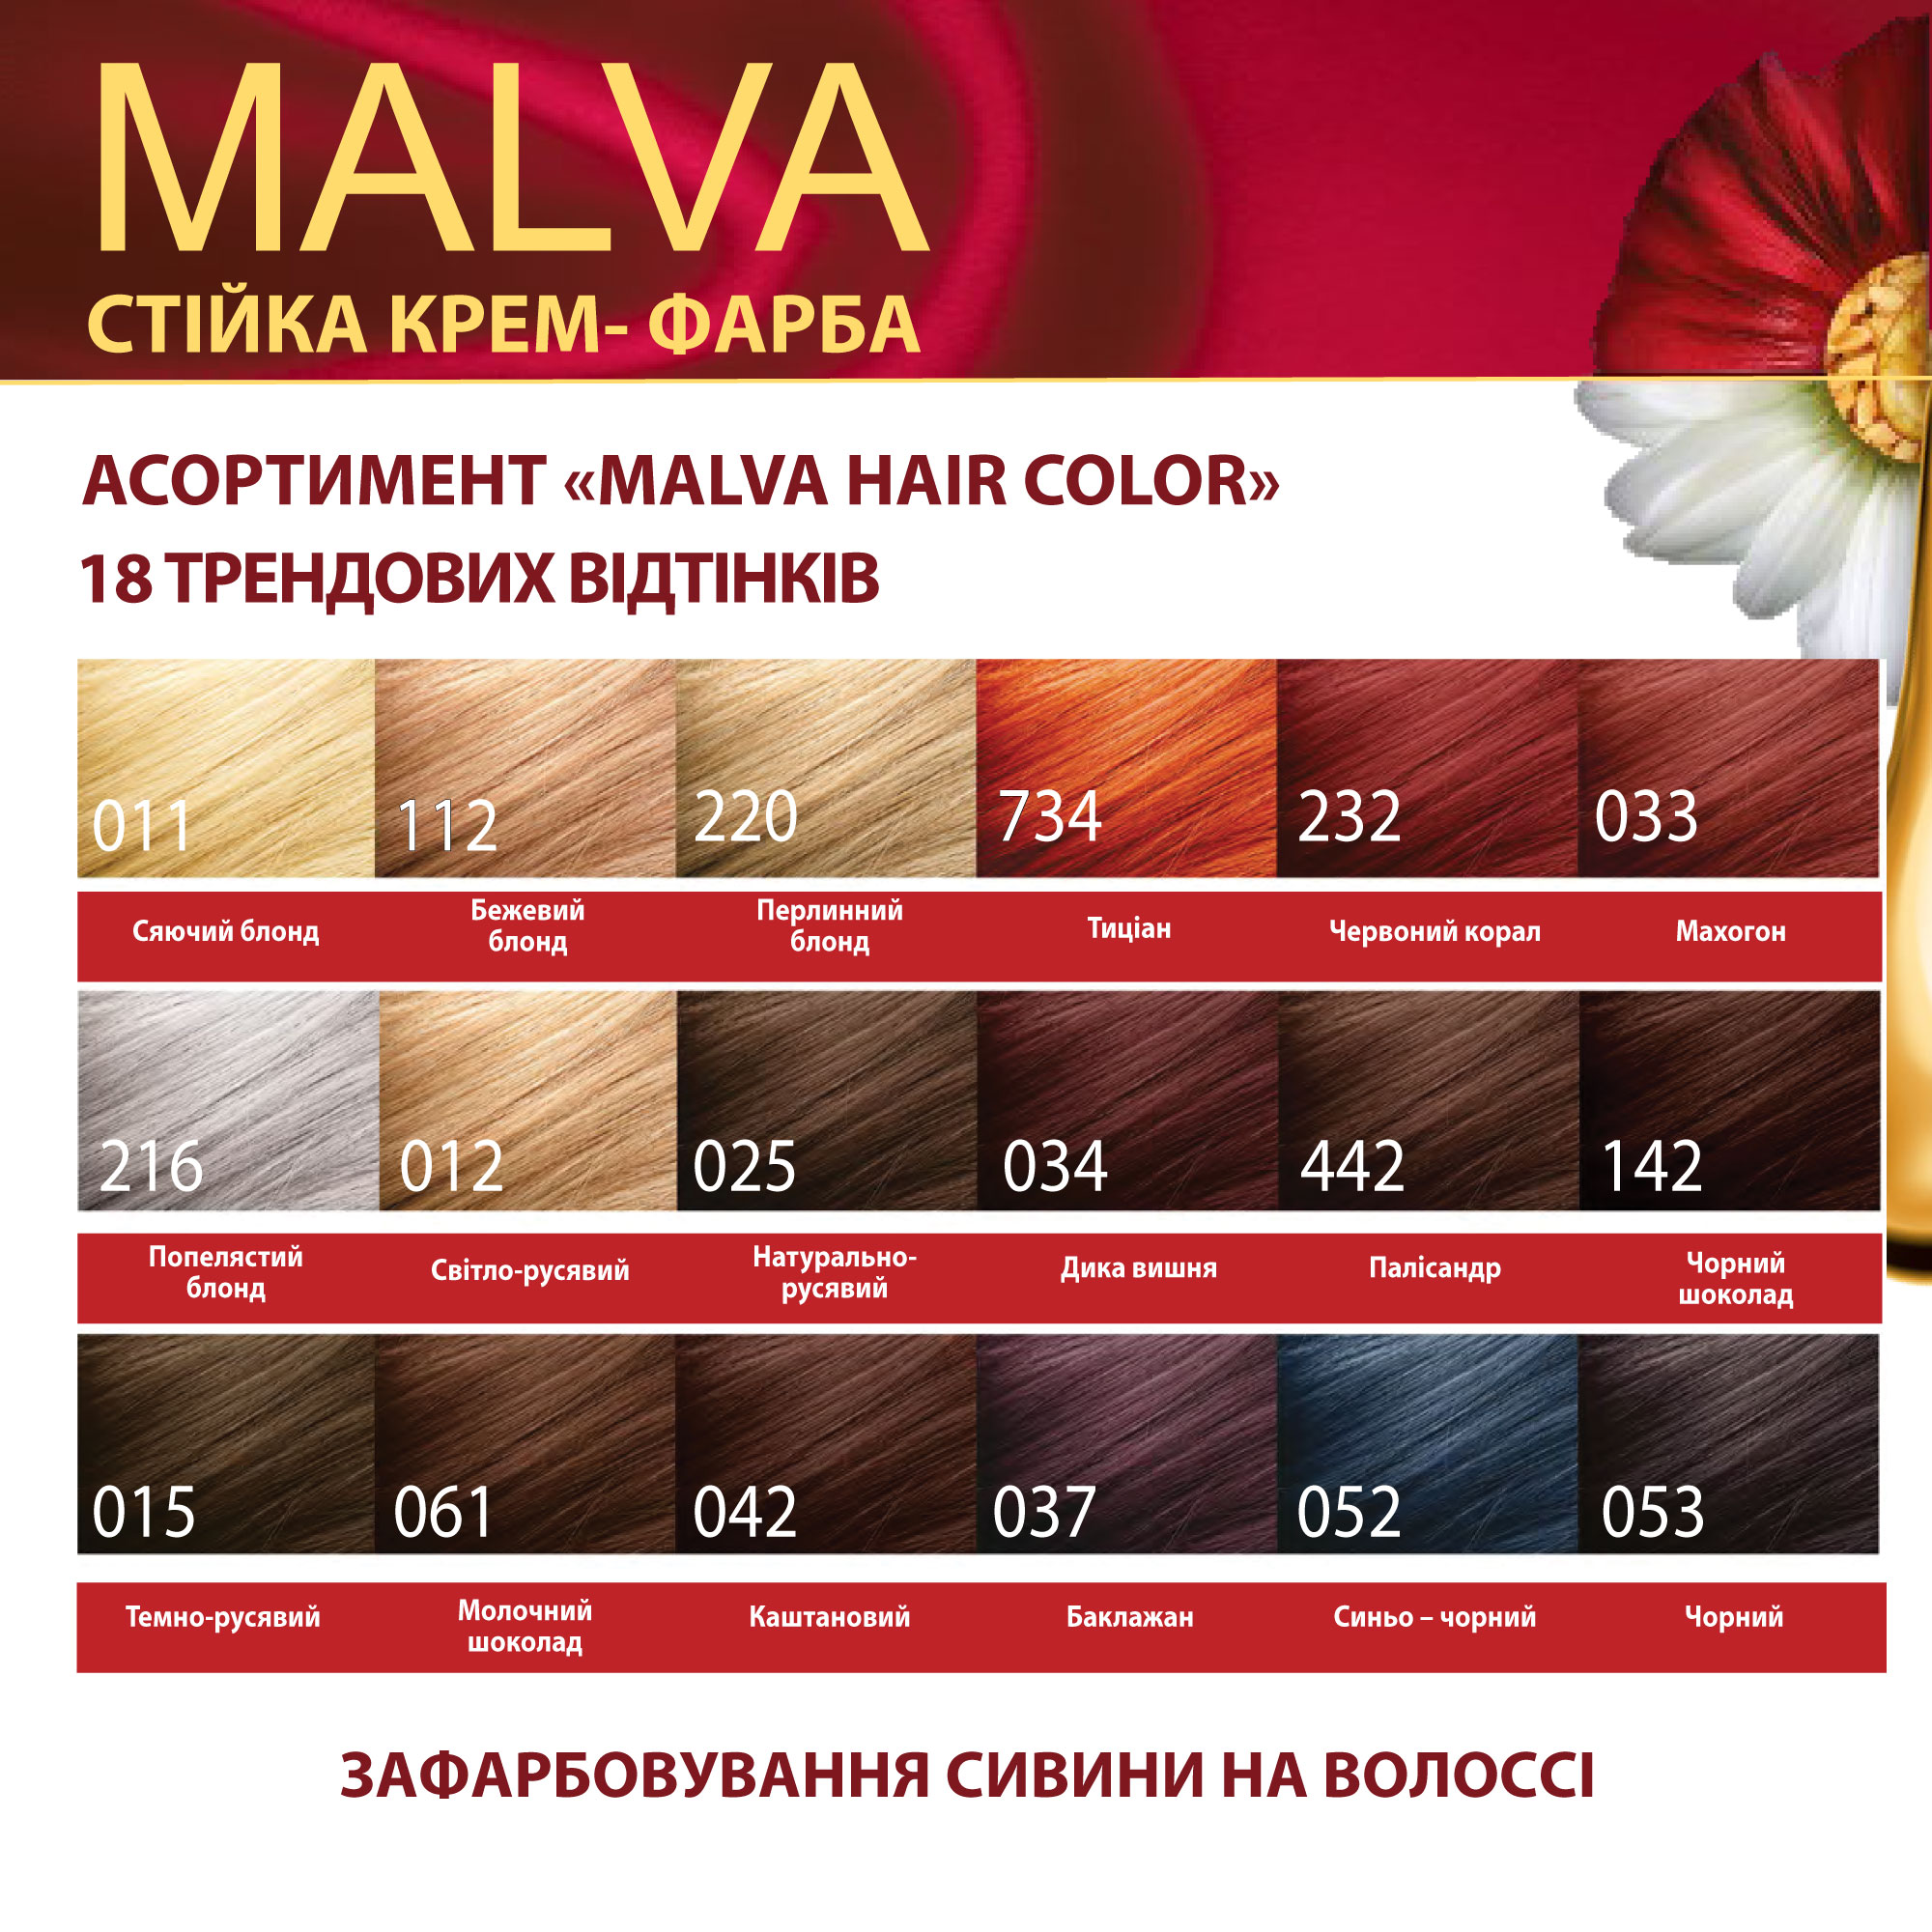 Крем-фарба для волосся Acme Color Malva, відтінок 053 (Чорний), 95 мл - фото 6